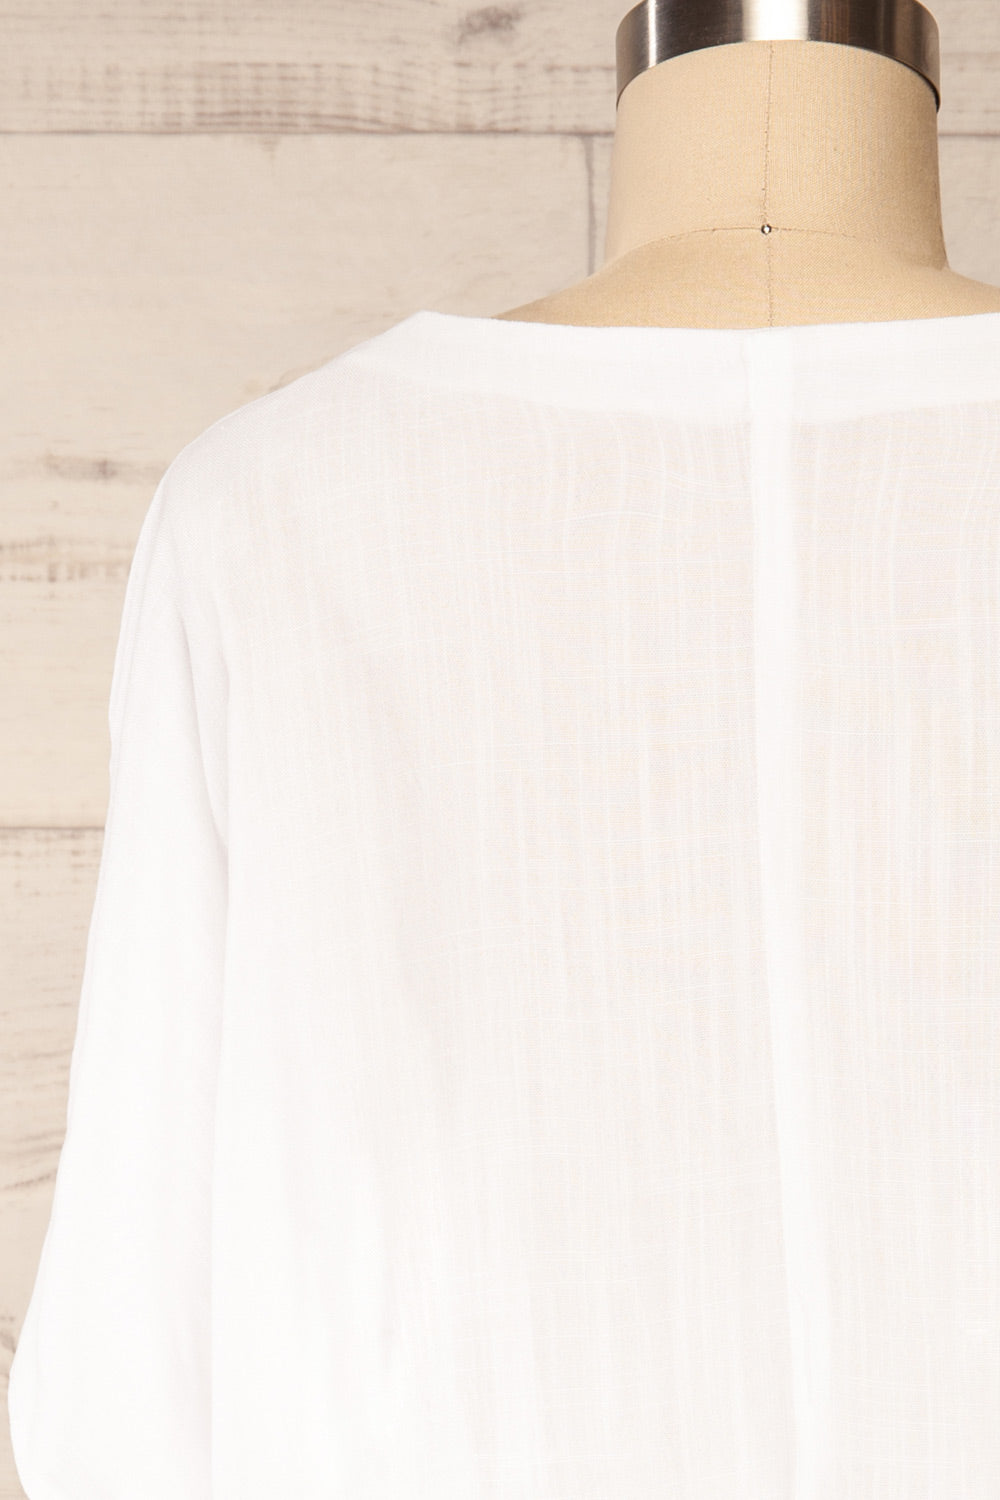 Naousa White V-Neck Short Sleeve Dress | La petite garçonne back close up